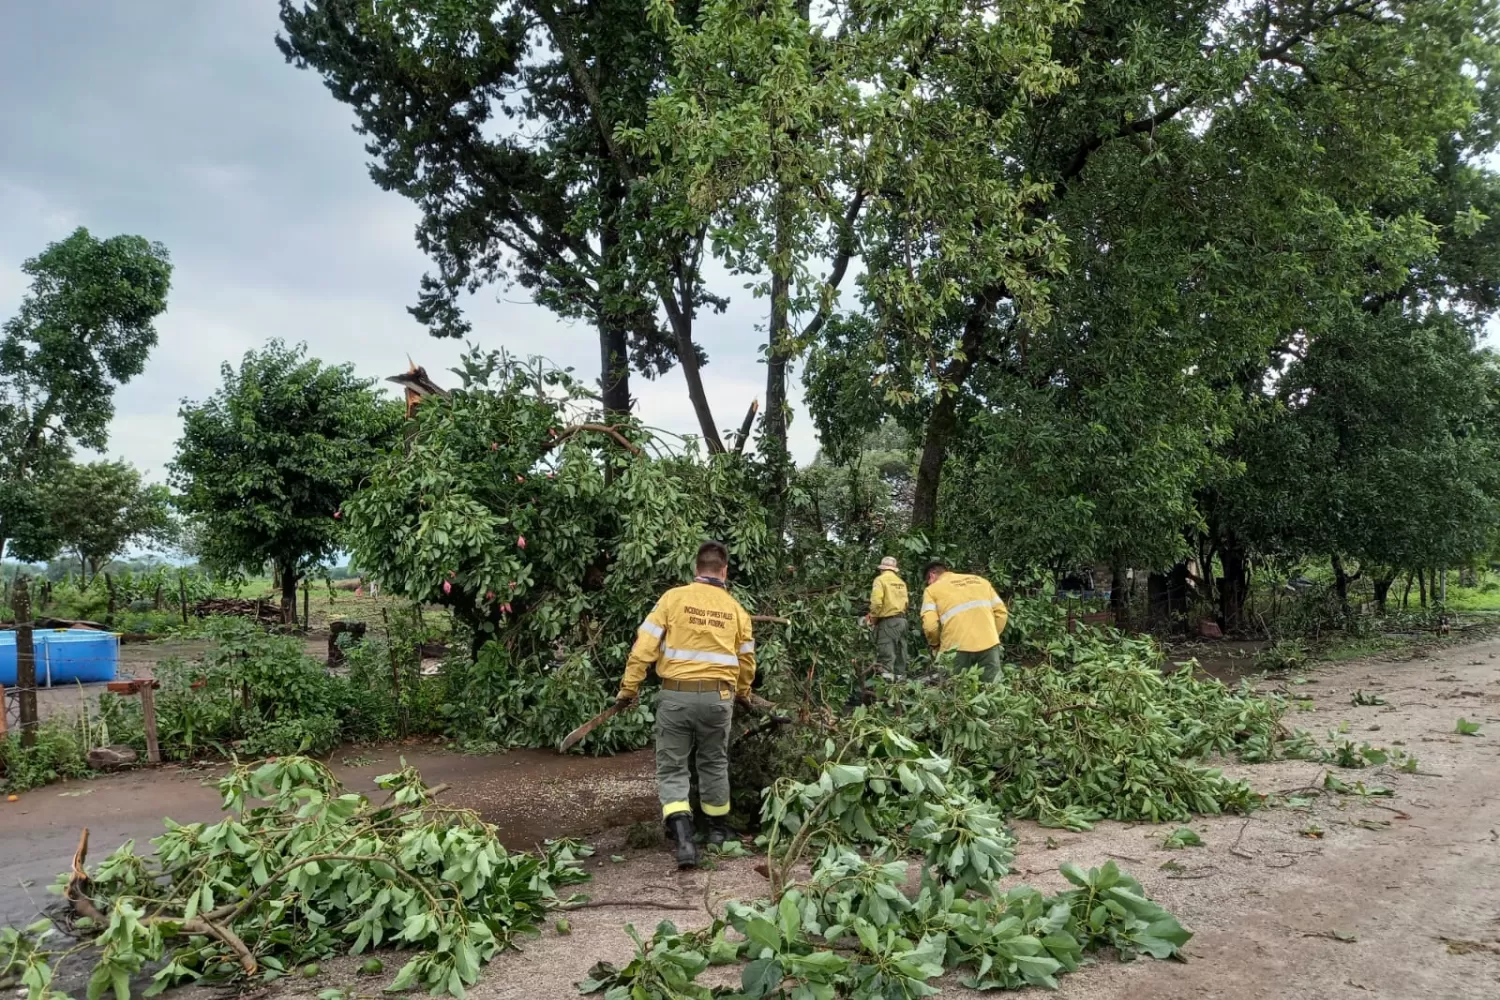 ÁRBOLES CAÍDOS. Personal de Defensa Civil trabaja en Taruca Pampa, luego de la tormenta del miércoles. Foto: Comunicación Pública